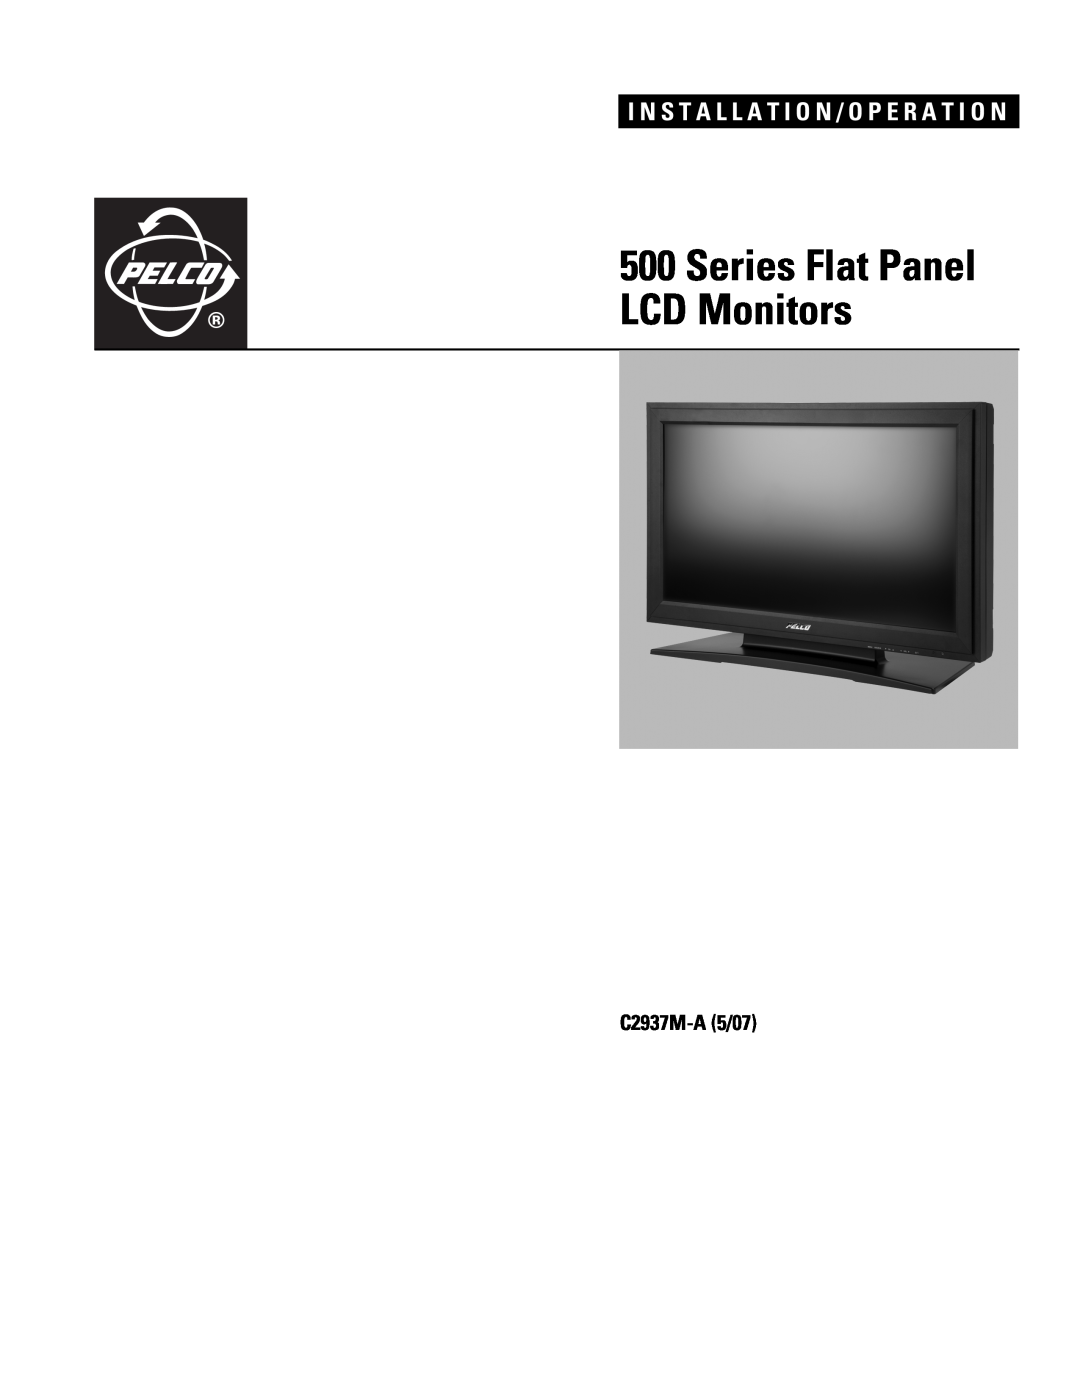 Pelco 500 Series manual C2937M-A 5/07, Series Flat Panel LCD Monitors, I N S T A L L A T I O N / O P E R A T I O N 